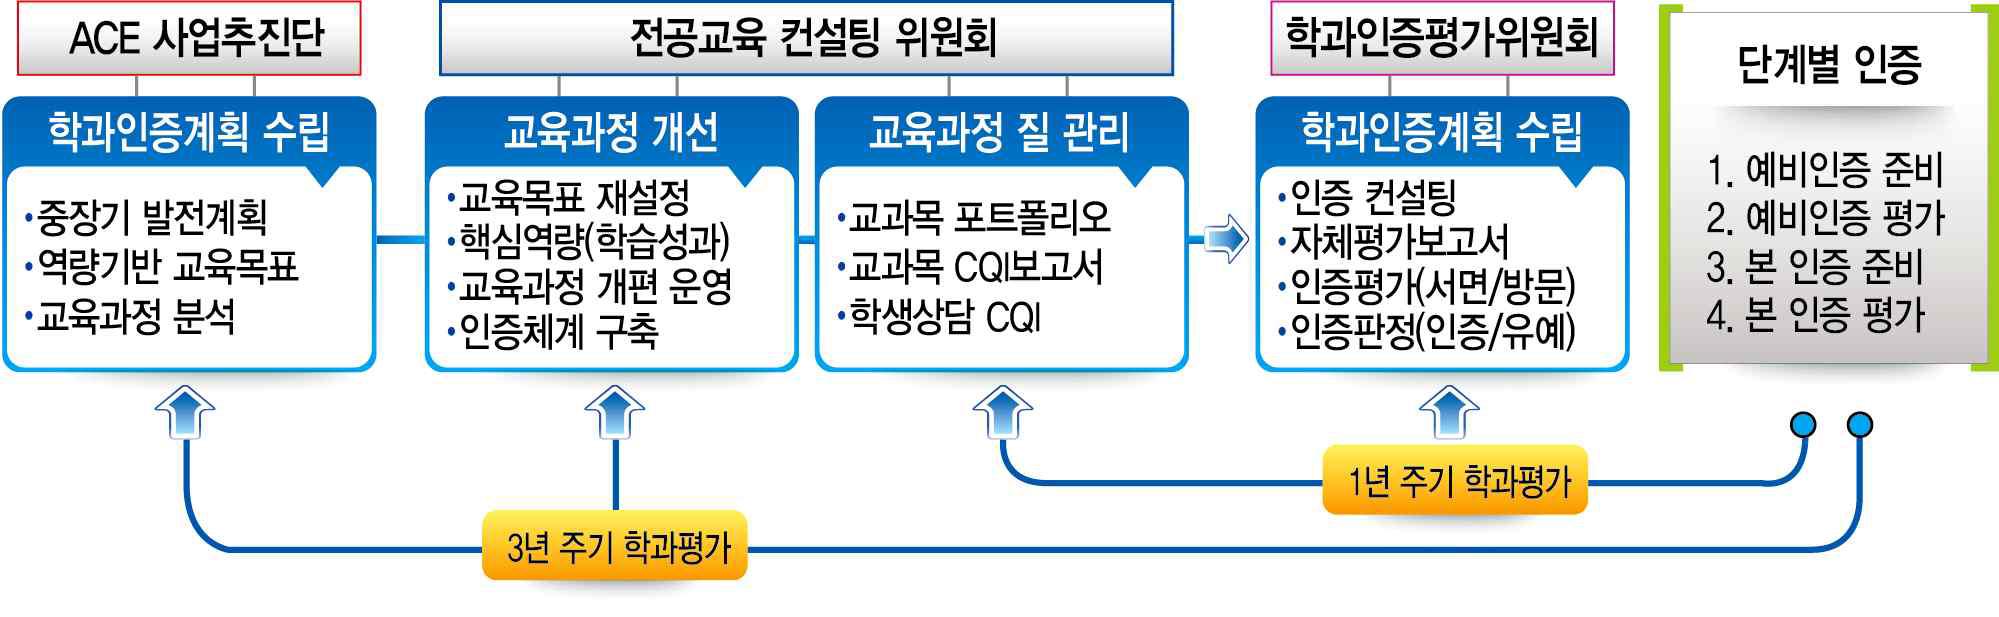 전북대학교 자체 학과인증 프로세스